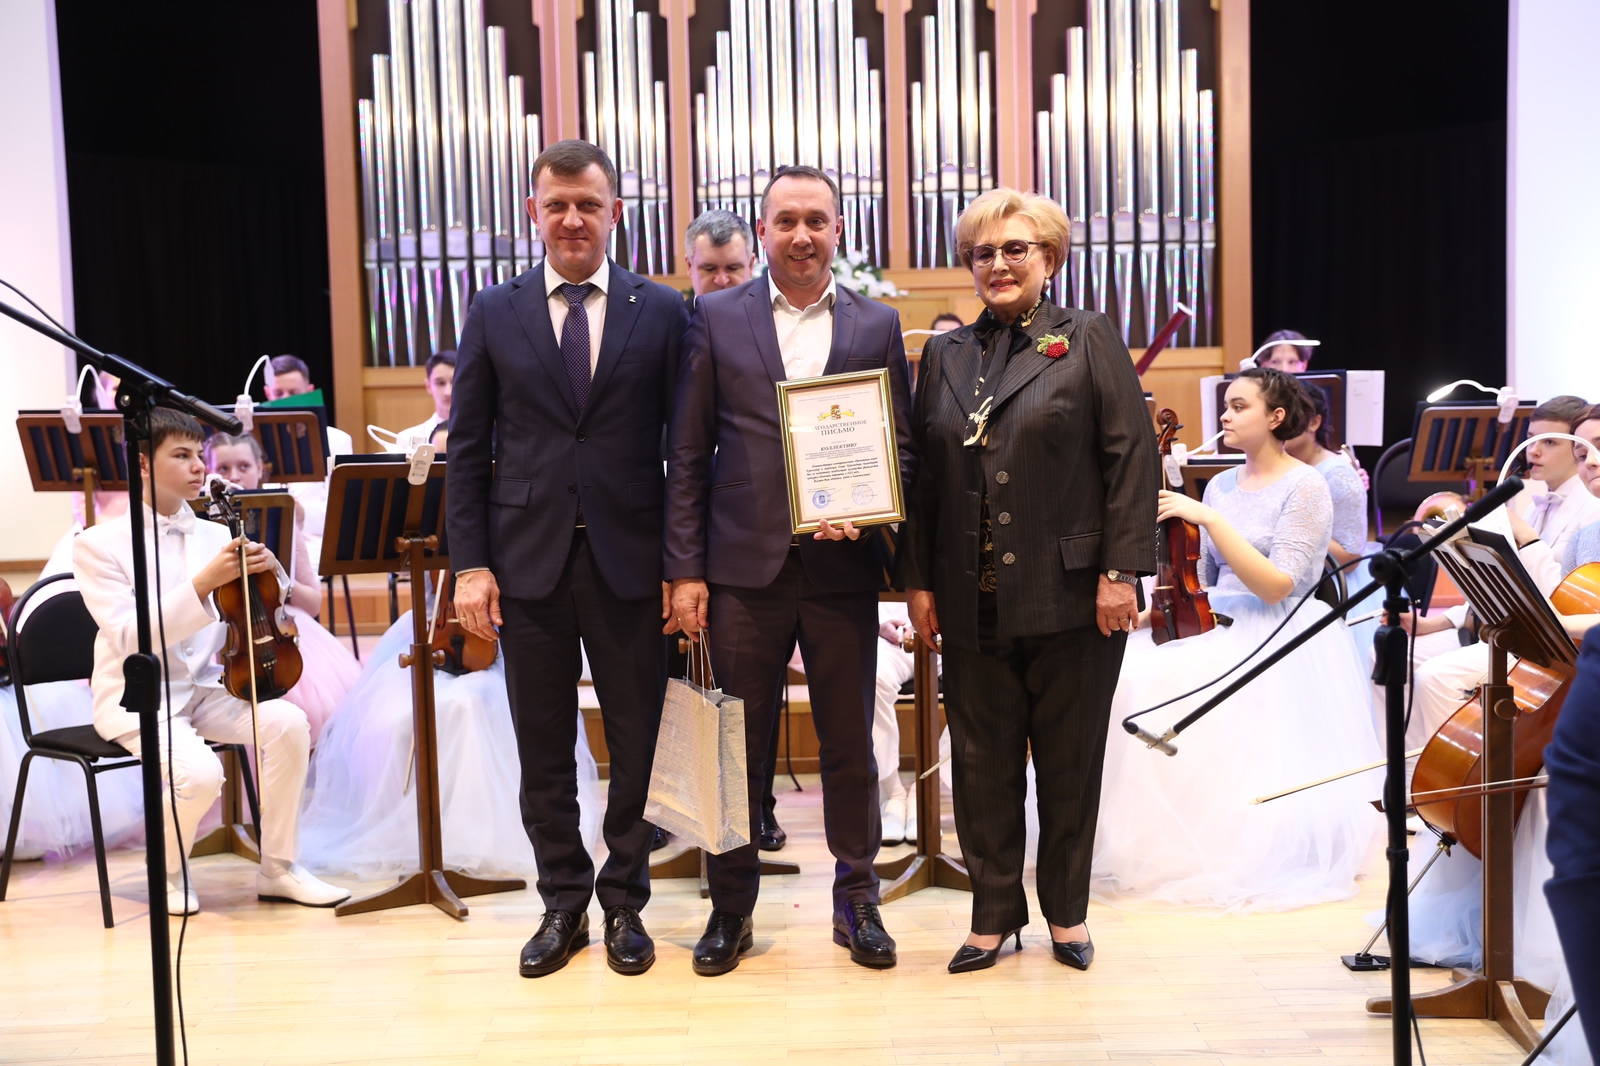 И Муниципальном концертном зале города Краснодара чествовали победителей Всероссийского конкурса "Большая перемена".